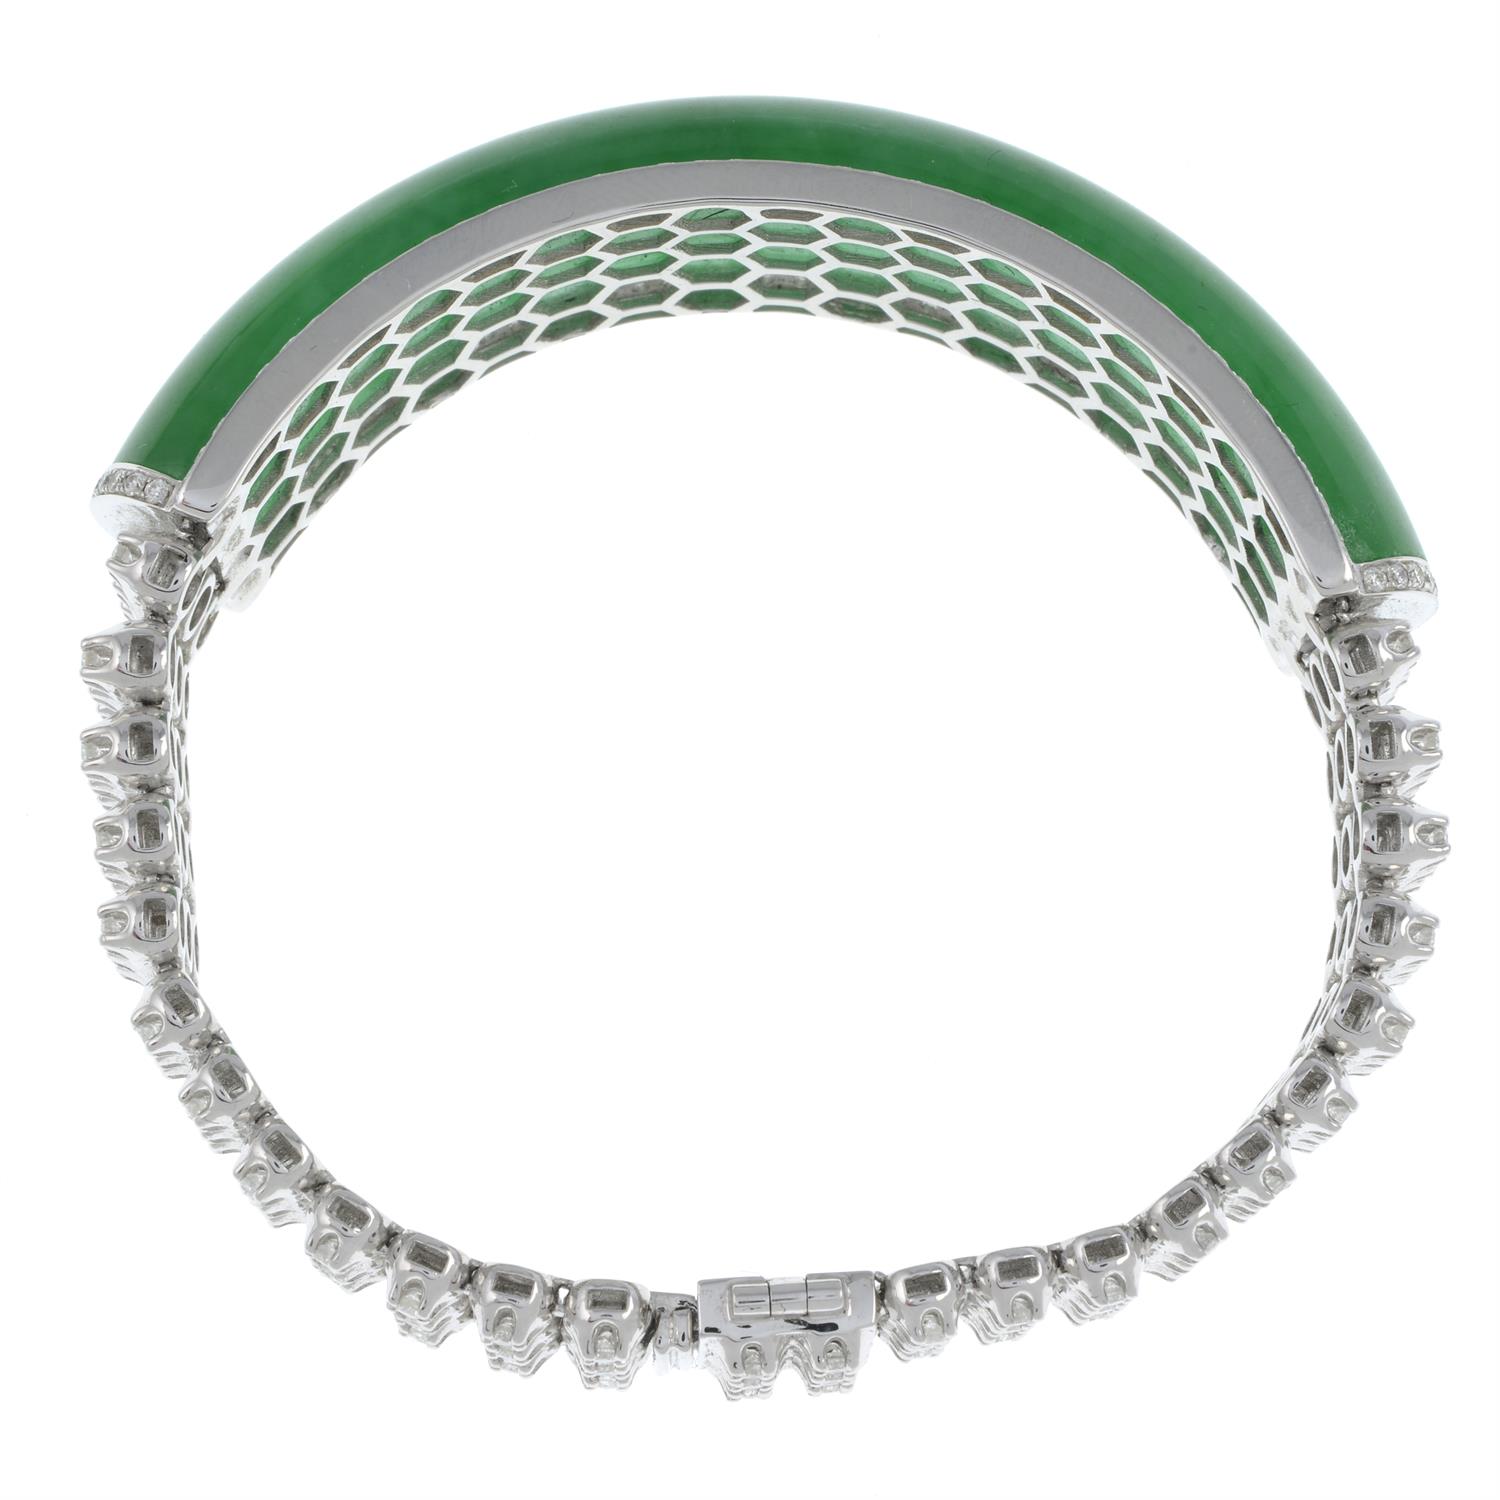 Jade and diamond bracelet, by Jadeite & Co. - Image 4 of 4